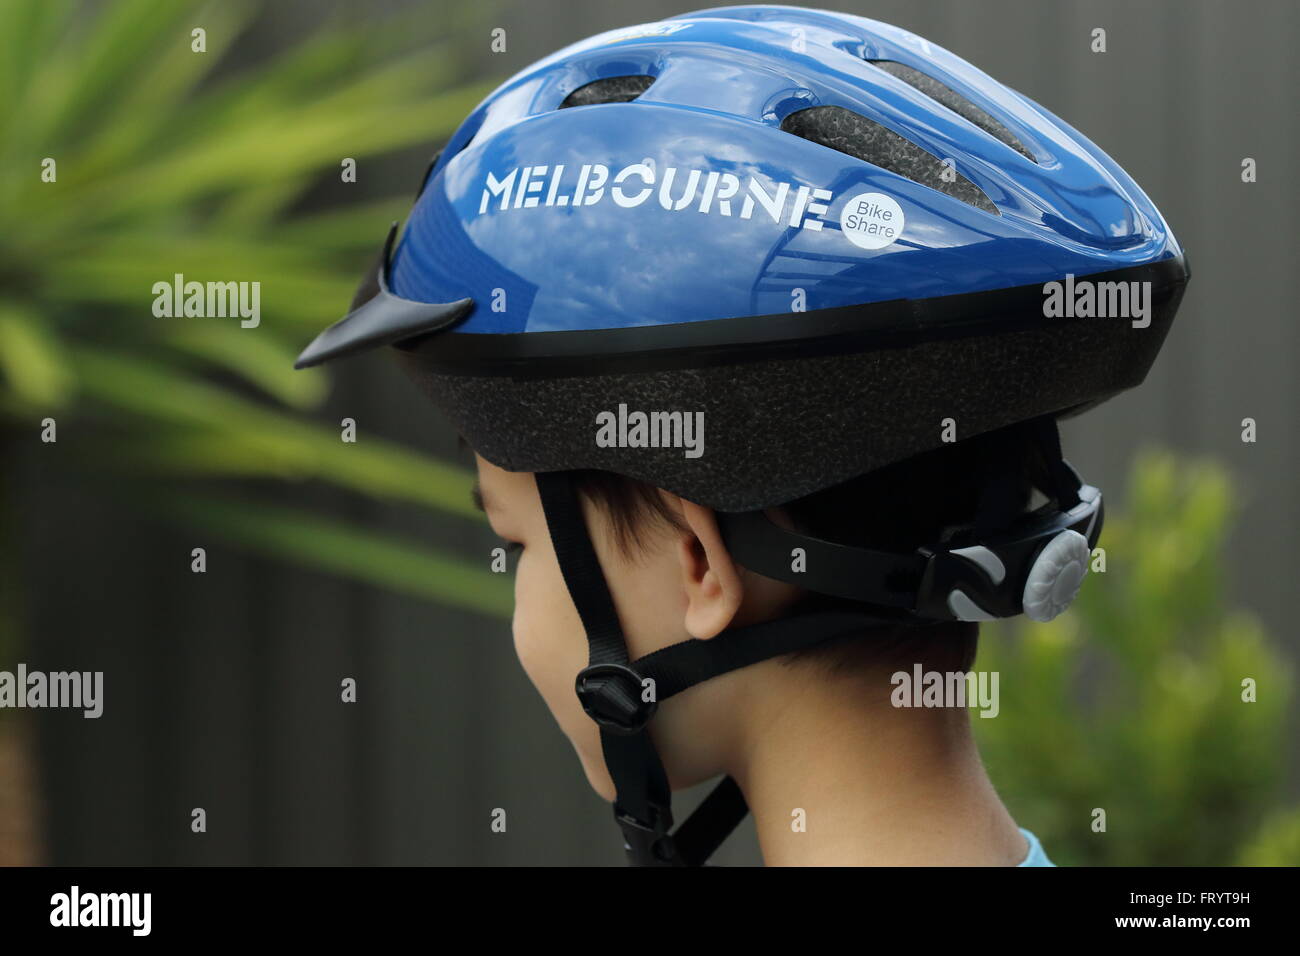 Melbourne Bike Condividi casco Foto Stock